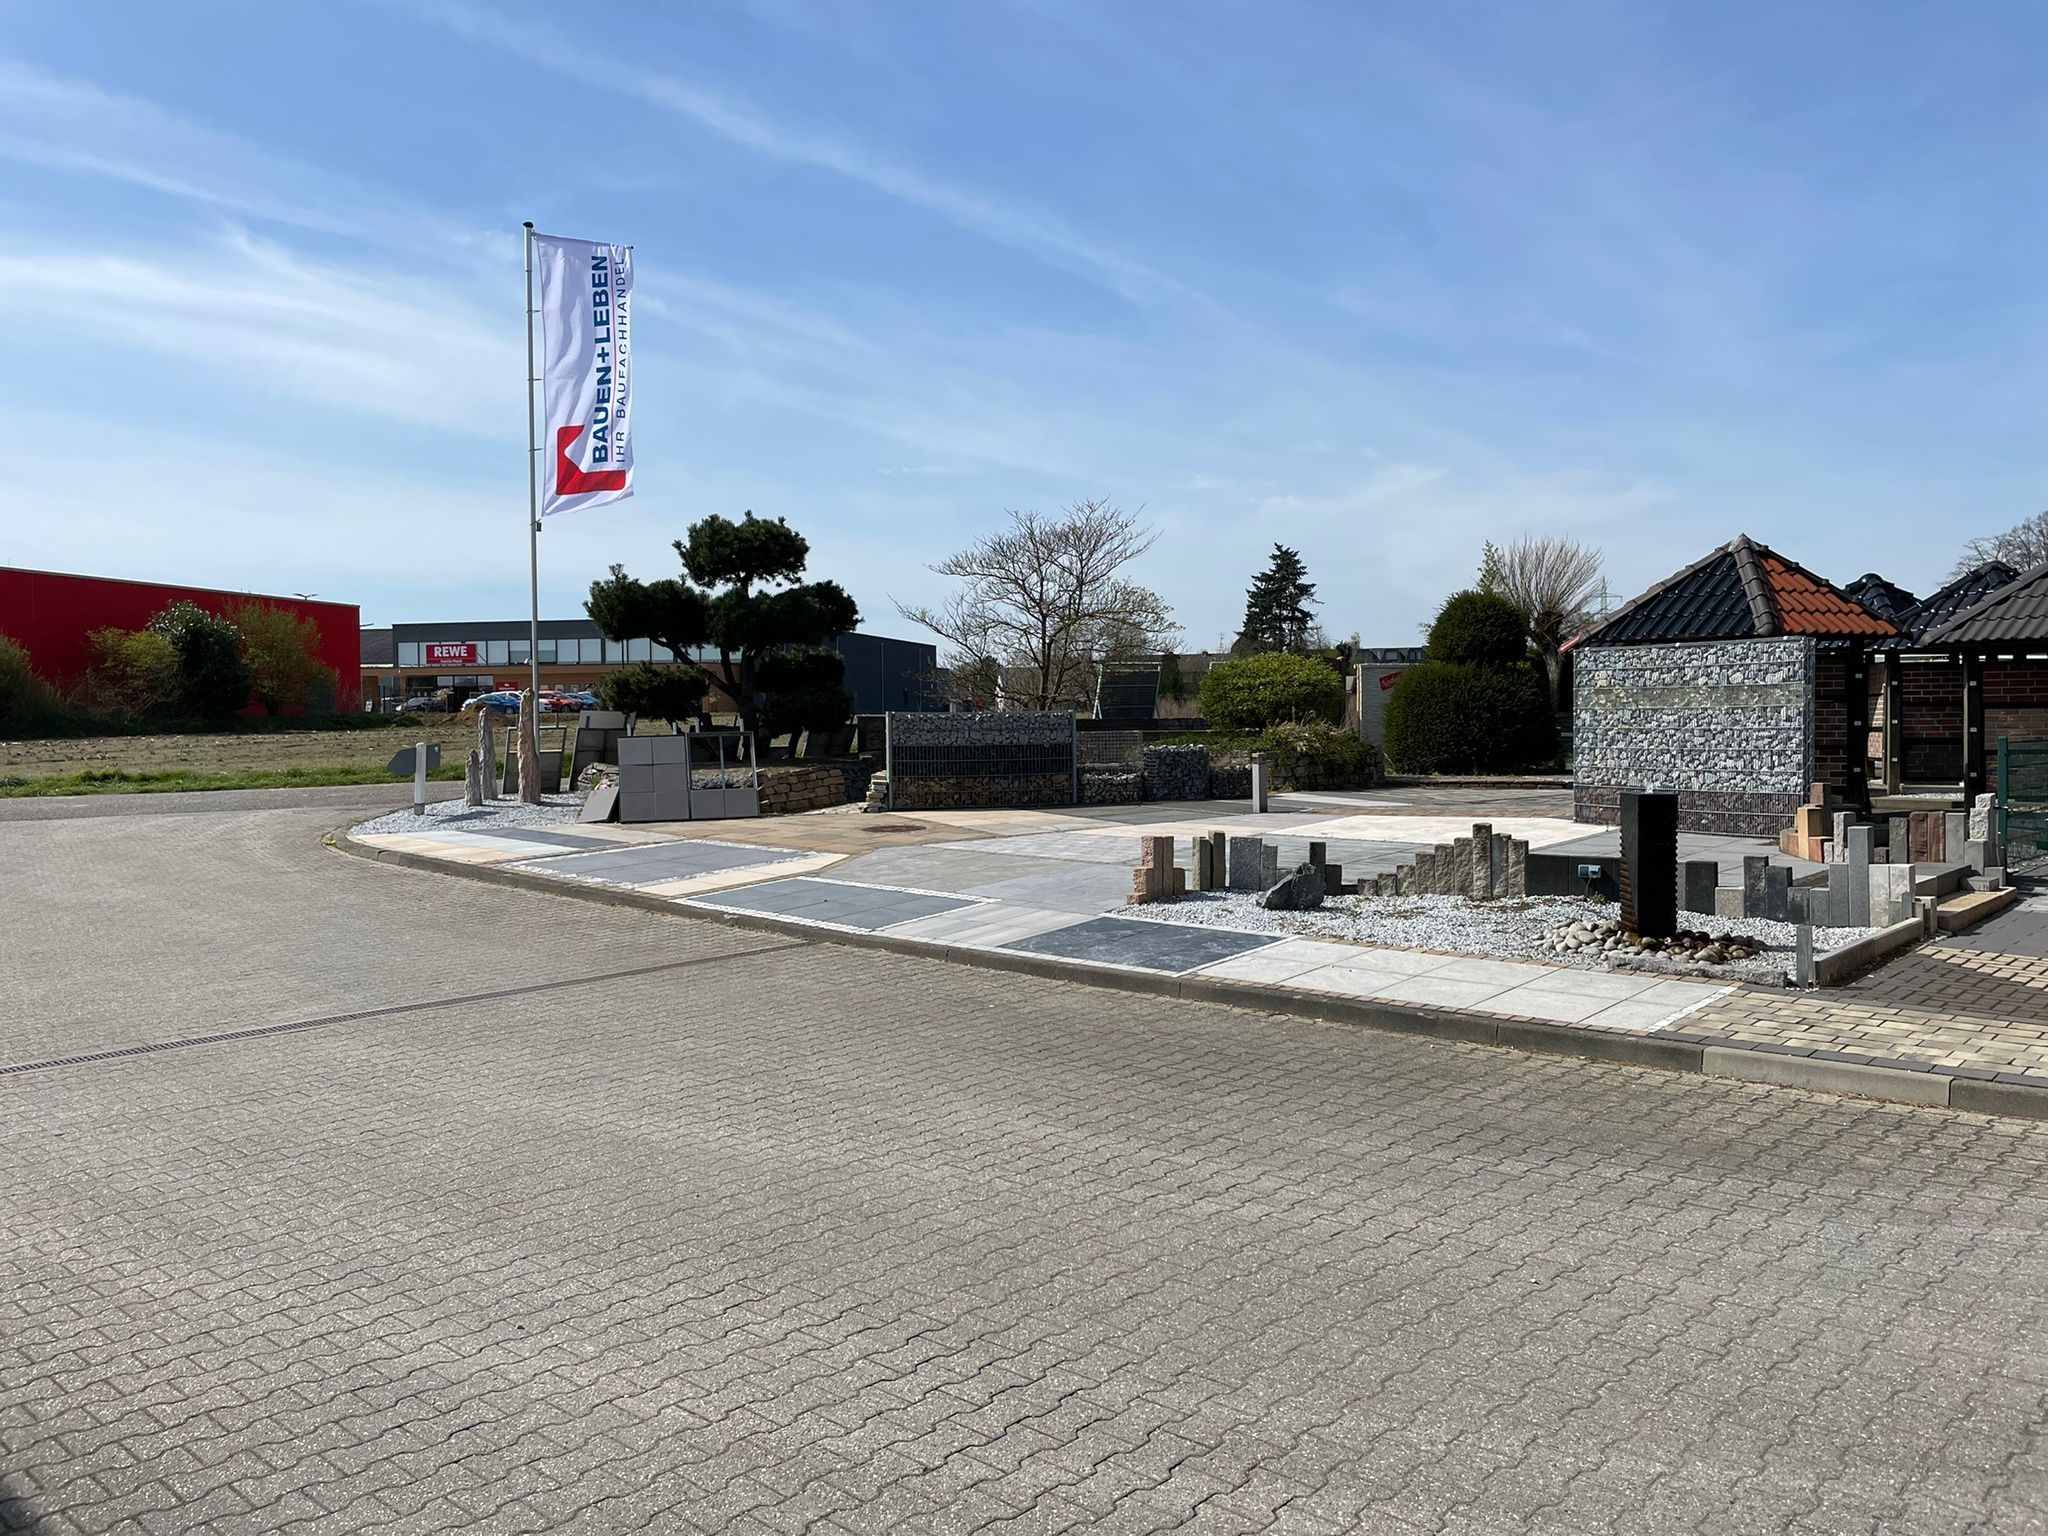 Kundenbild groß 2 BAUEN+LEBEN - Ihr Baufachhandel | Gerads Baufachzentrum GmbH & Co. KG